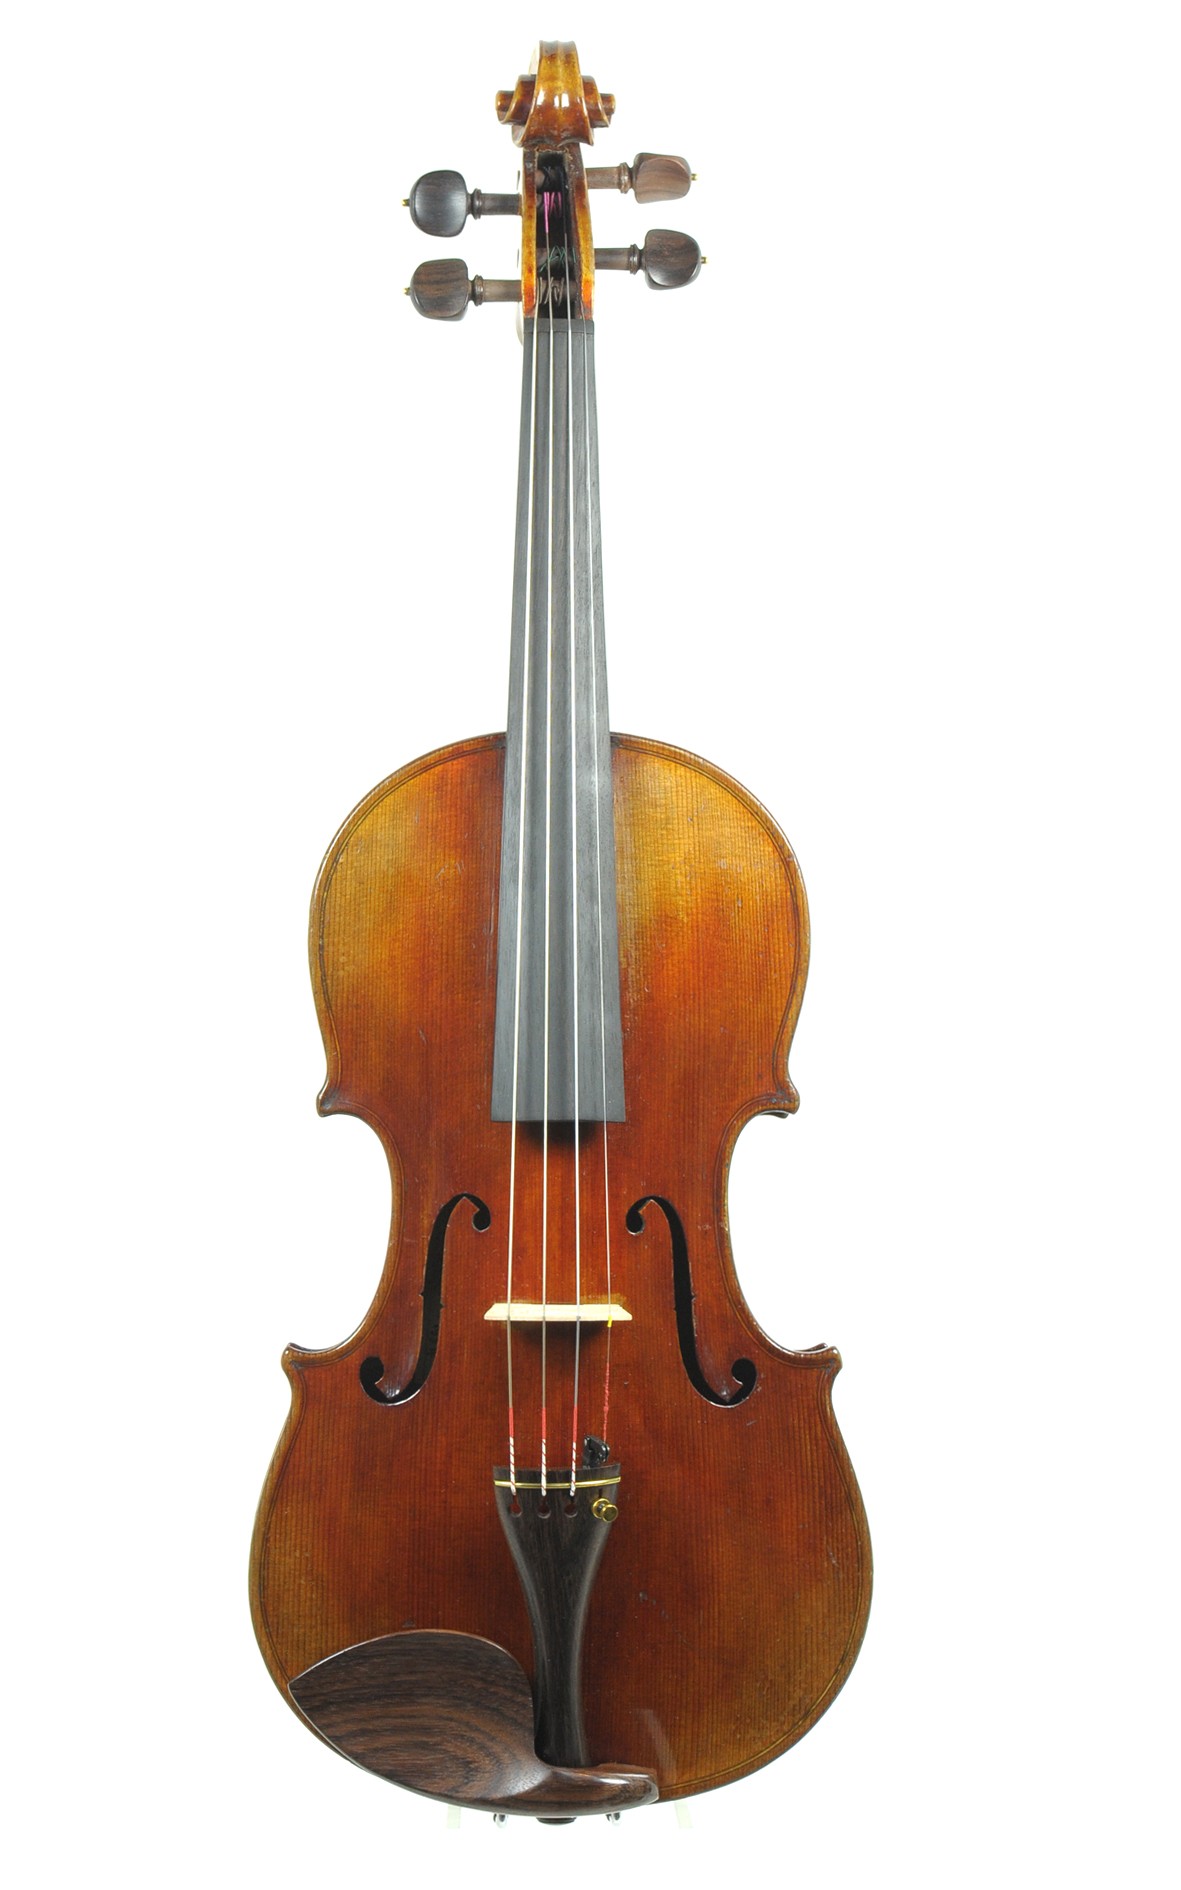 Rushworth & Dreaper, Liverpool, Apollo-violin, approx. 1910 - top view